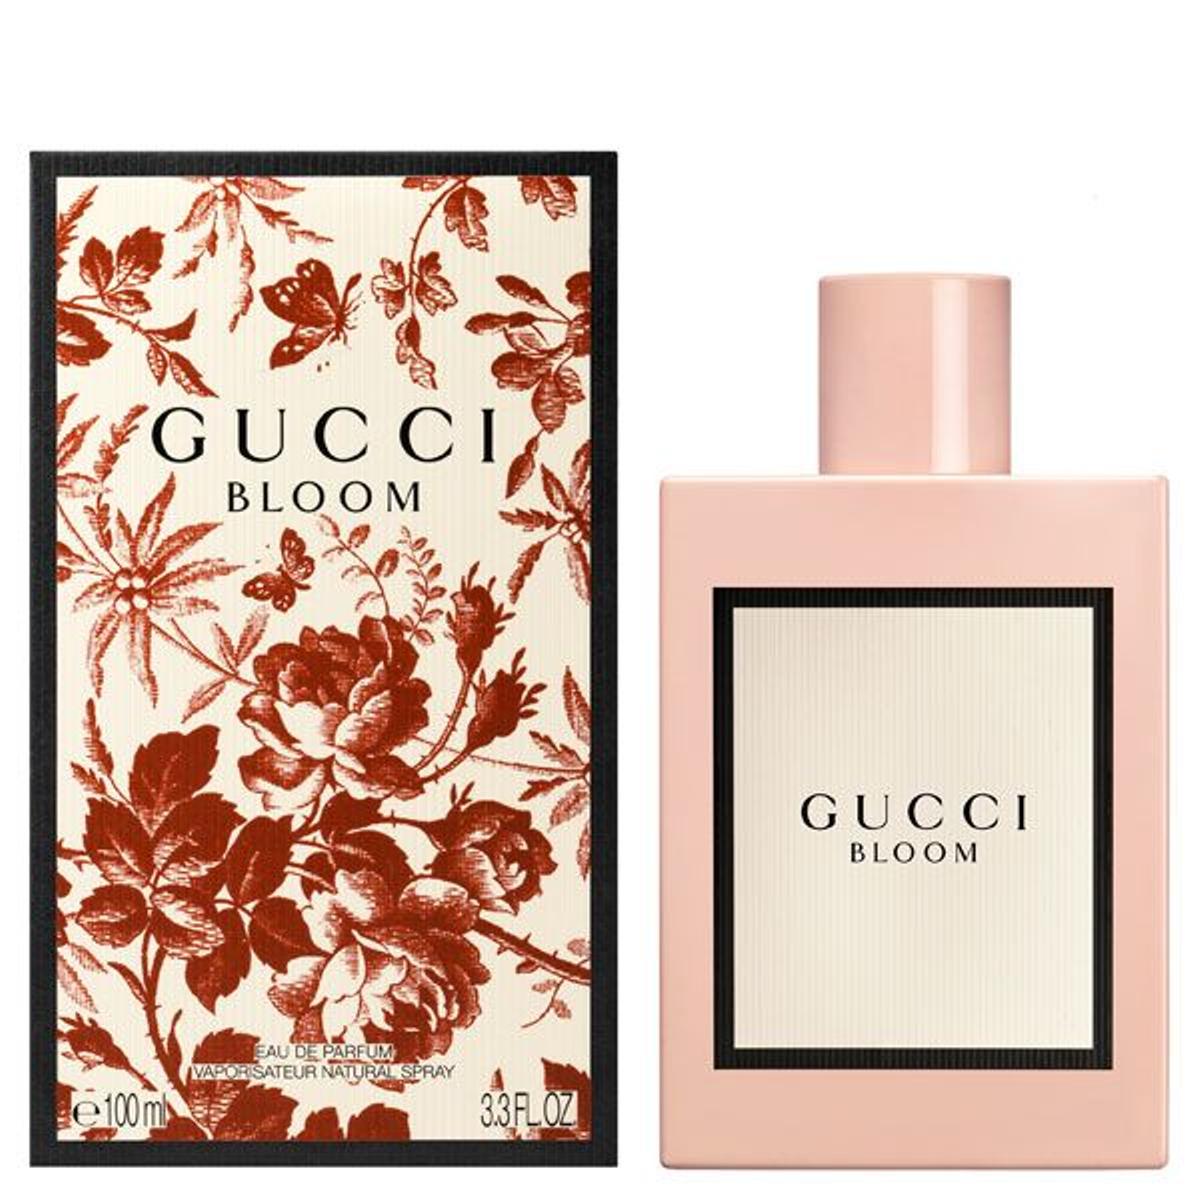 Gucci Bloom Eau de Parfum, Gucci